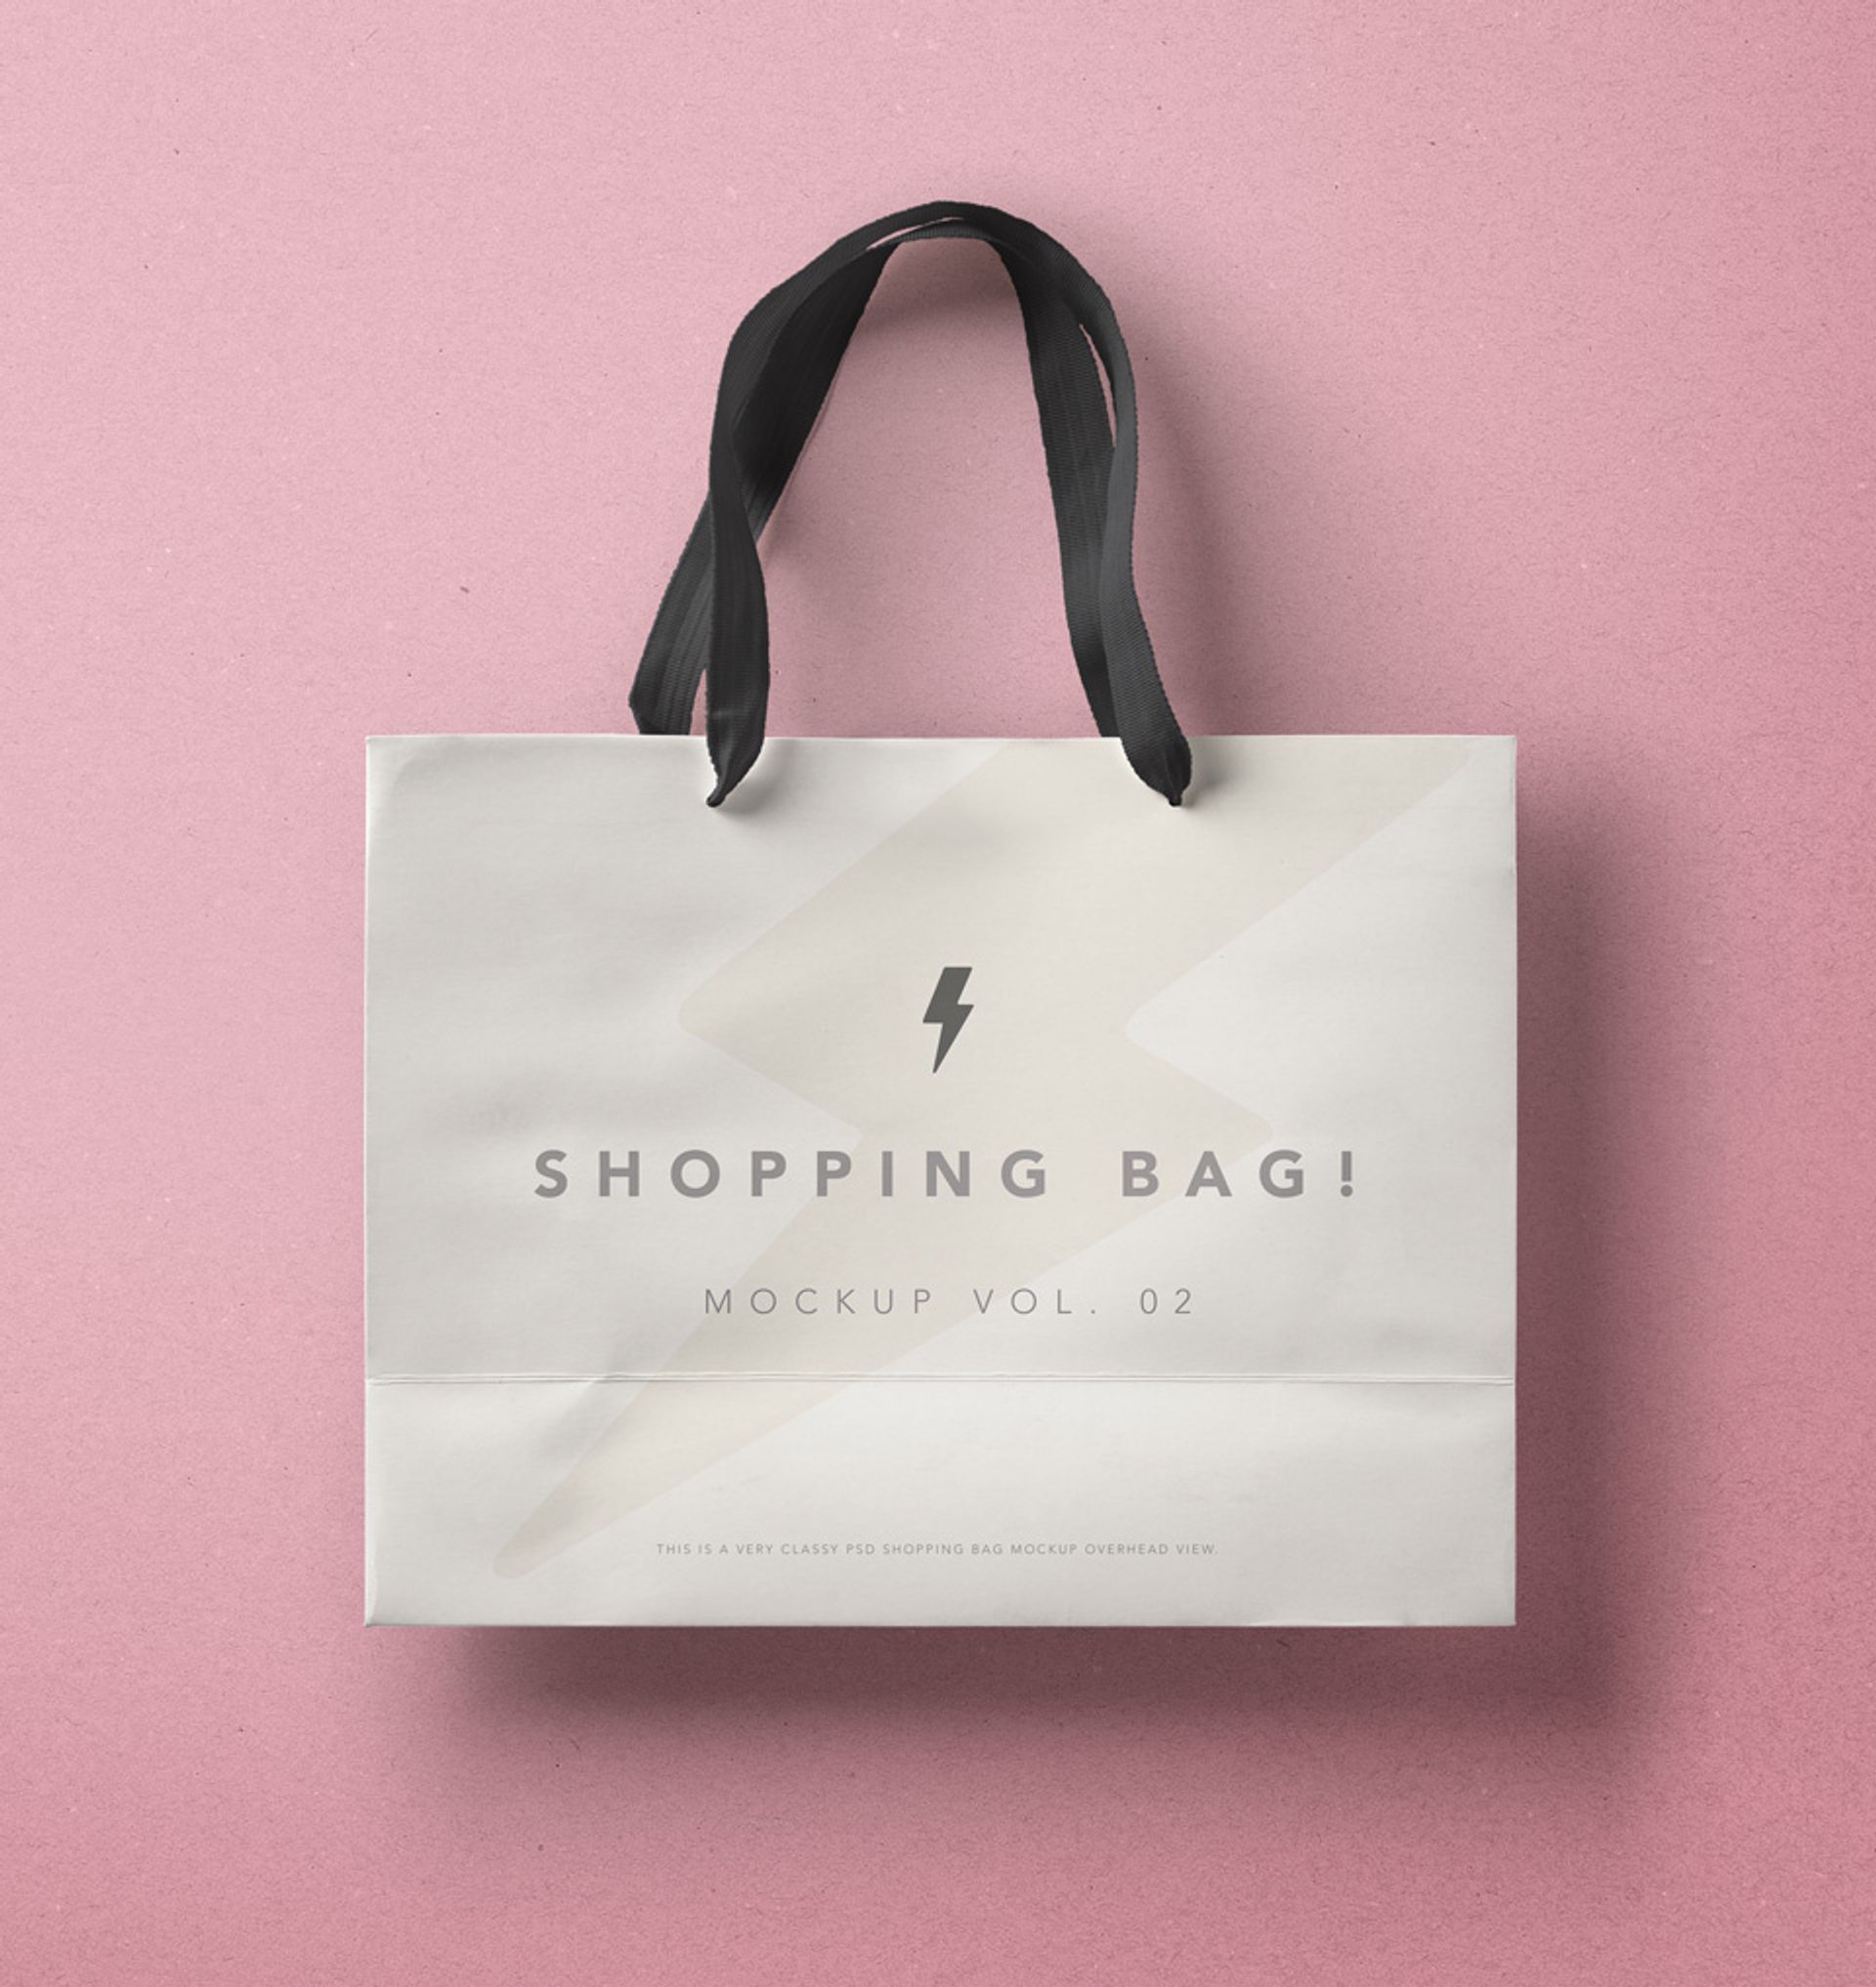 Free paper delivery bag mockup - Mockups Design